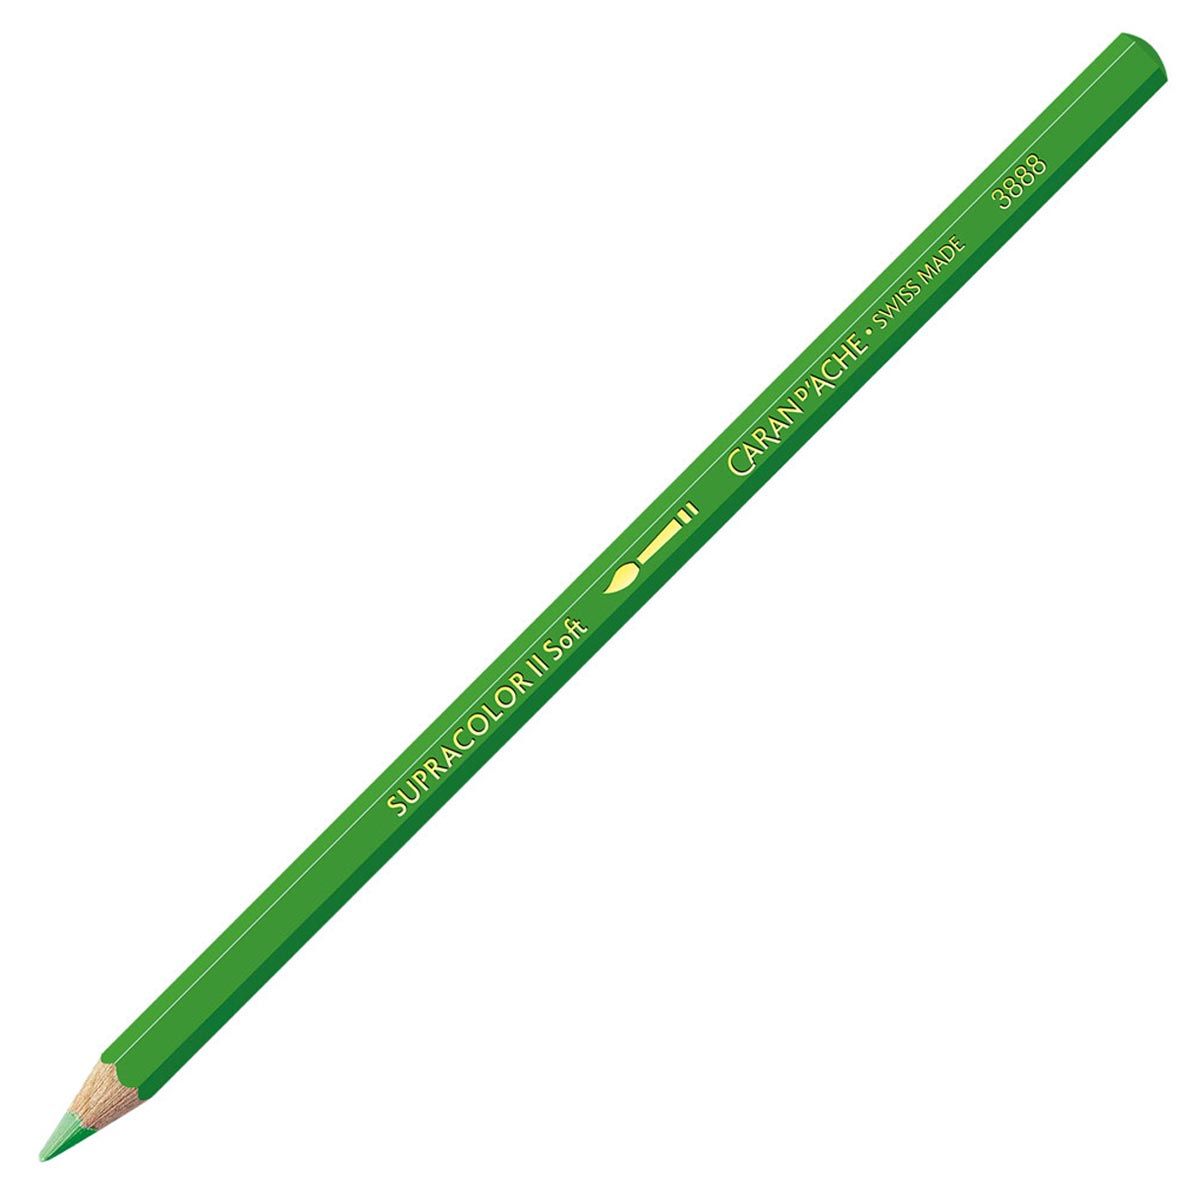 Caran d'Ache Supracolor ll Soft Aquarelle Pencil Yellow Green 230